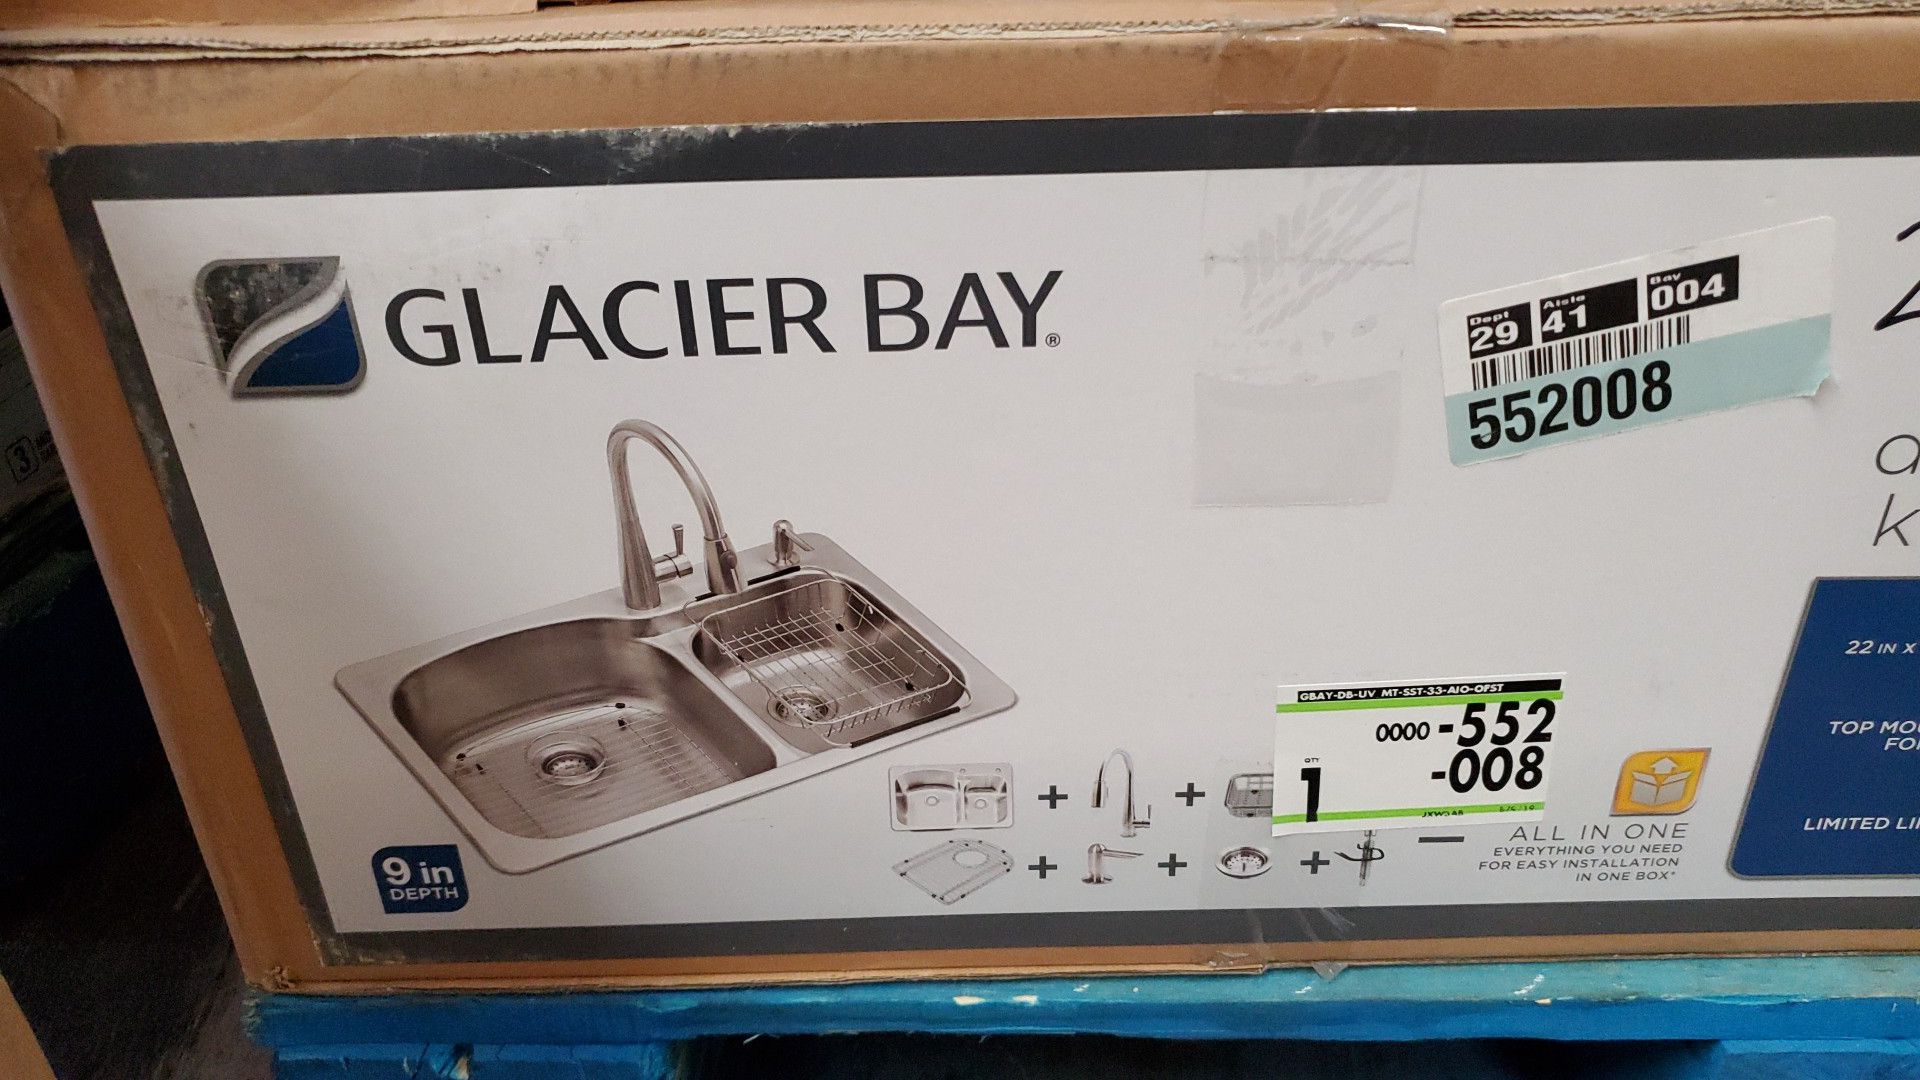 Glacier all in one kitchen sink